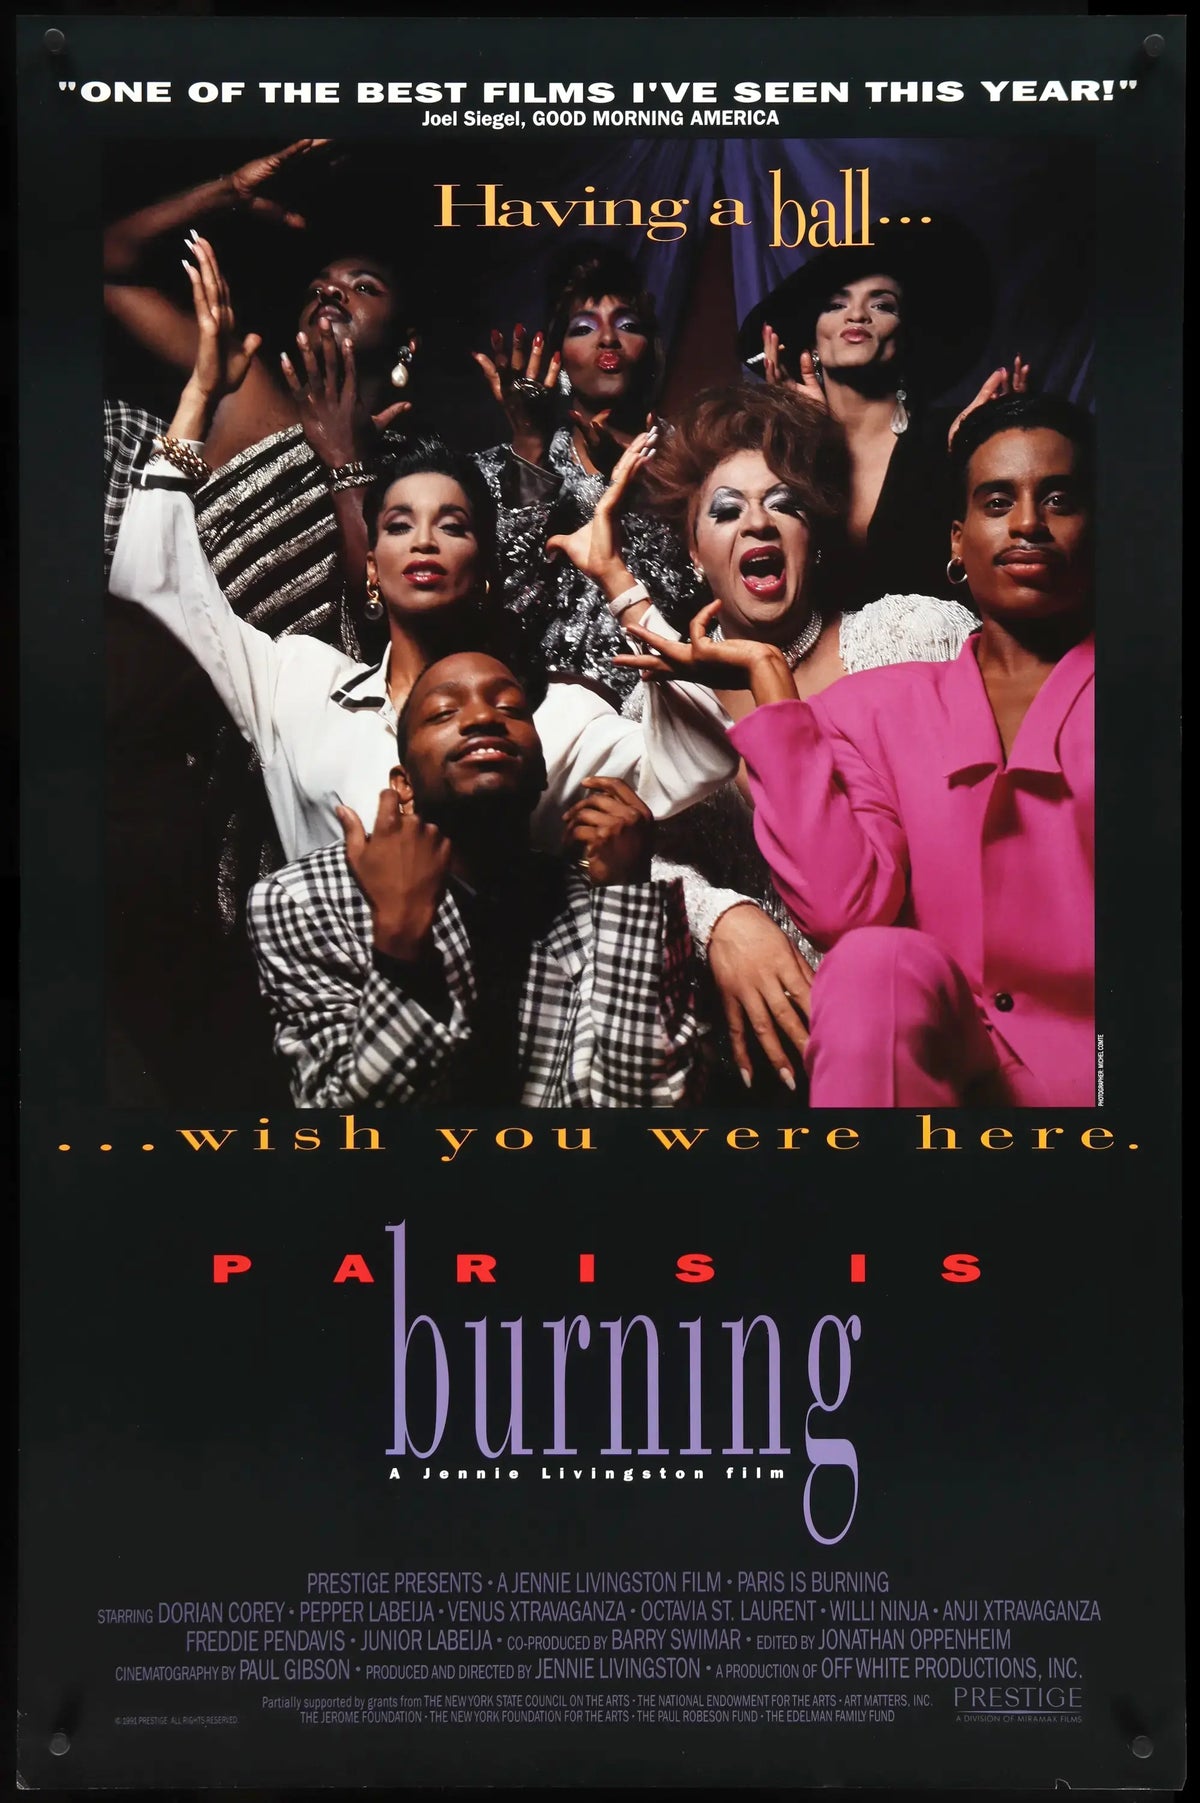 Paris is Burning (1990) original movie poster for sale at Original Film Art